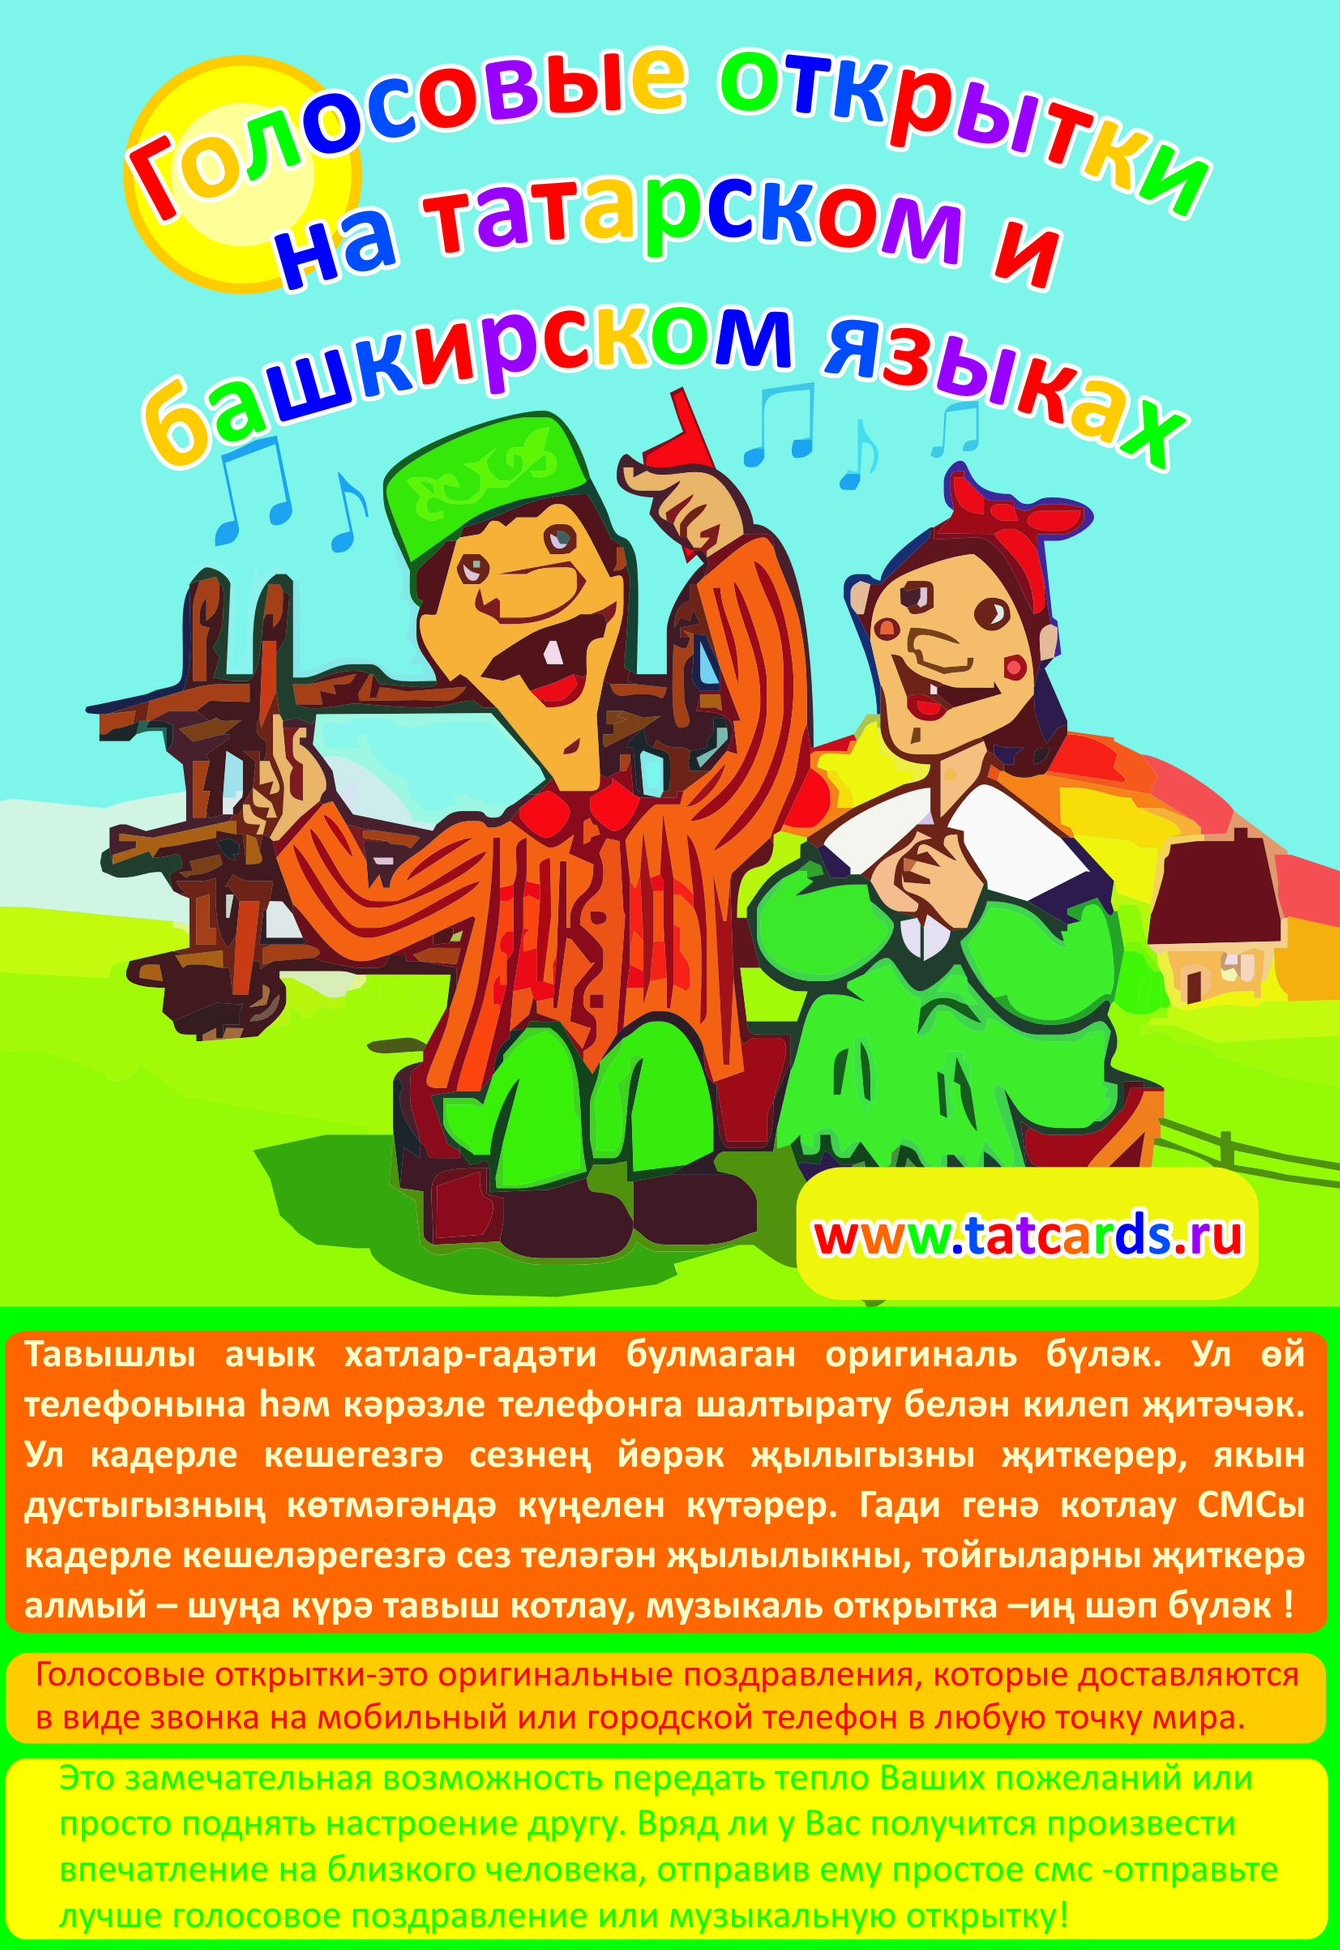 Снимай на татарском. С днём рождения на татарском языке. Поздравительные открытки на татарском языке. С днём рождения мужчине на татарском языке. С юбилеем на башкирском языке.